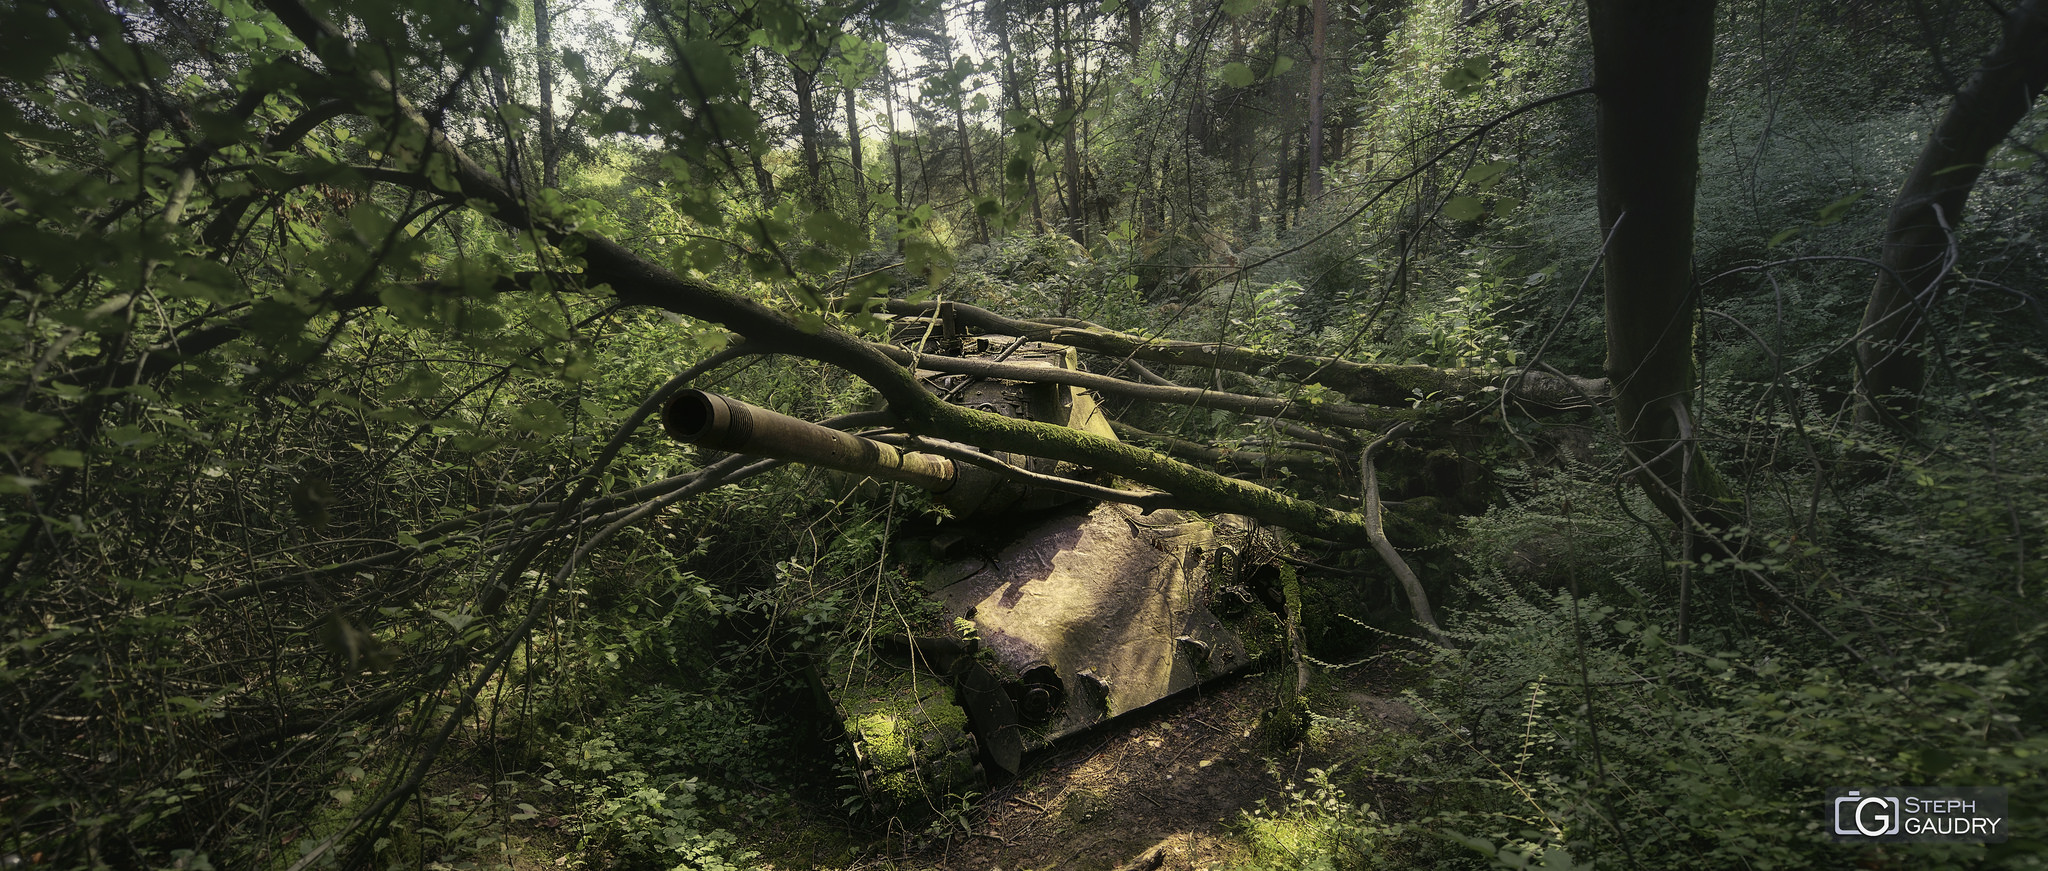 Tank abandonné dans la forêt [Klicken Sie hier, um die Diashow zu starten]